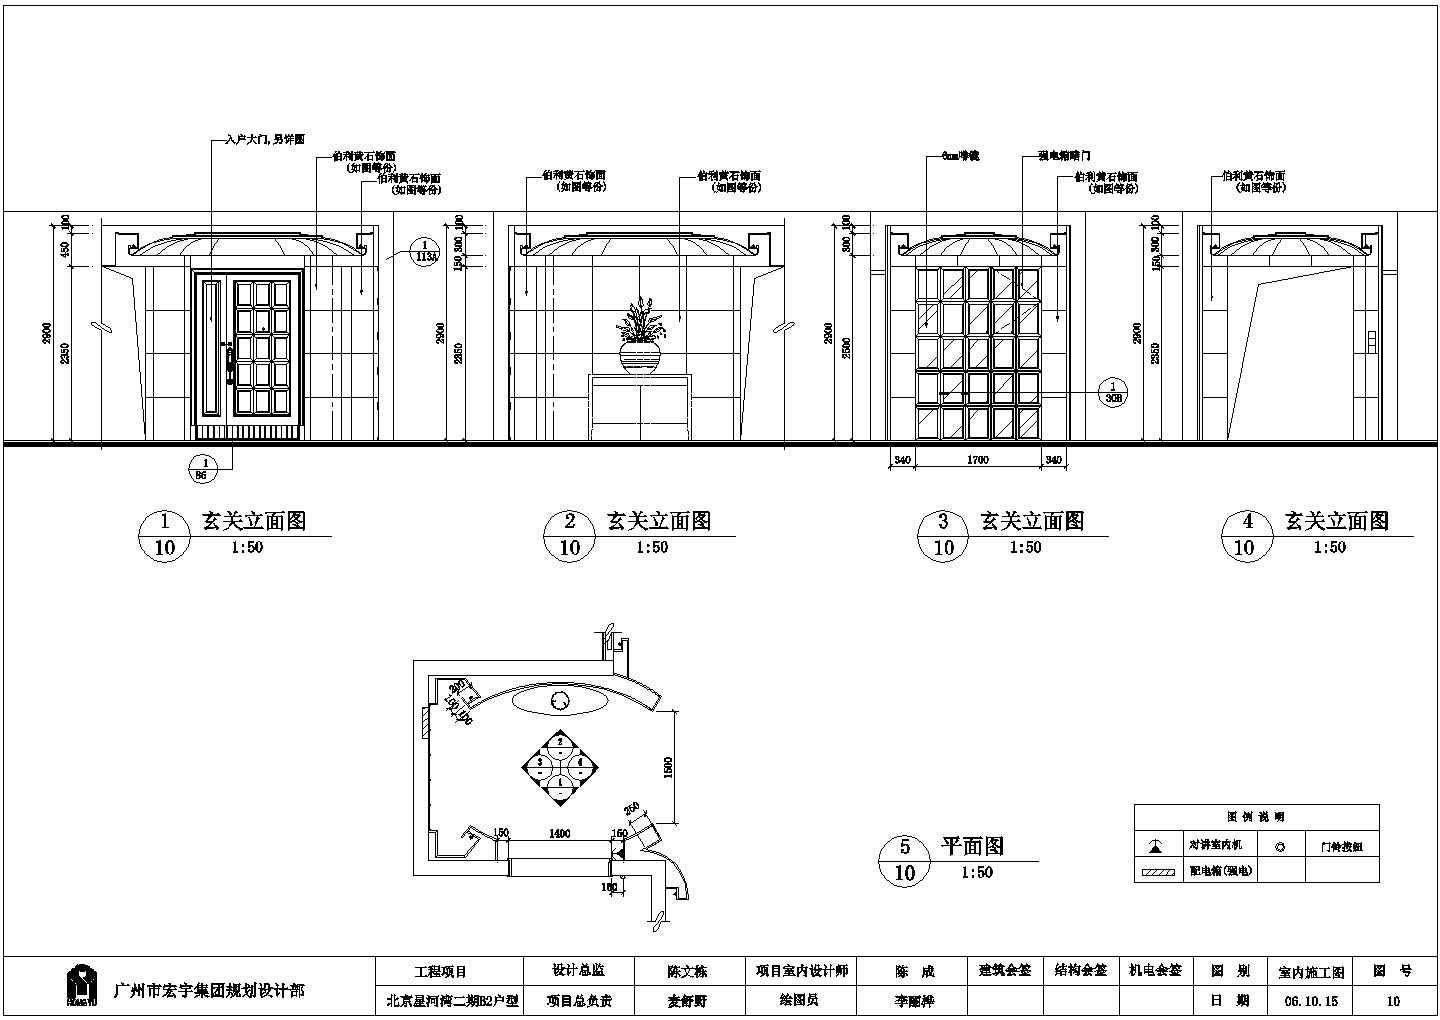 上海市某居住区高档现代化别墅全套装修装饰设计CAD图纸